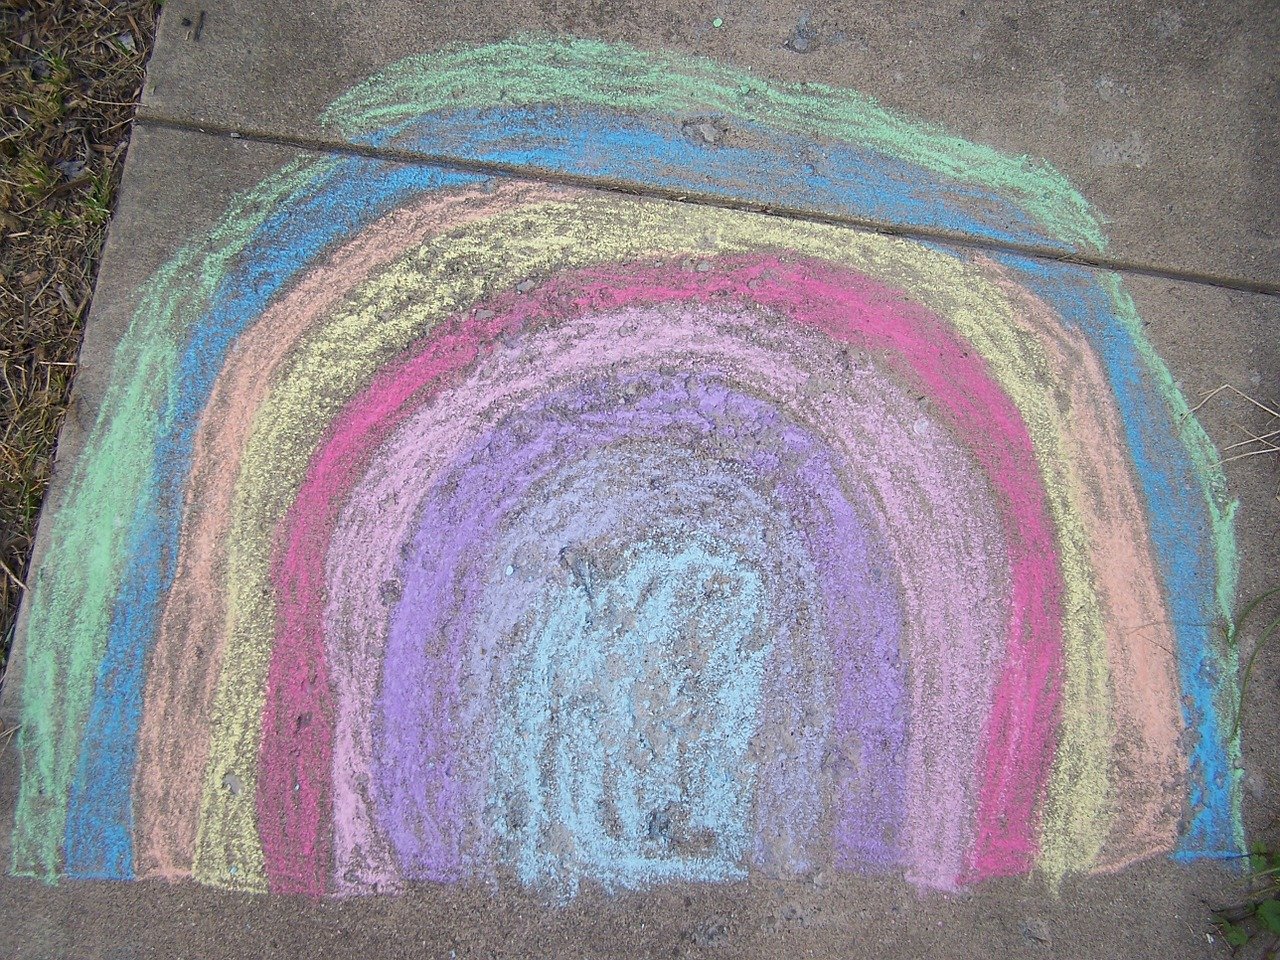 Rainbow chalk art on a sidewalk.